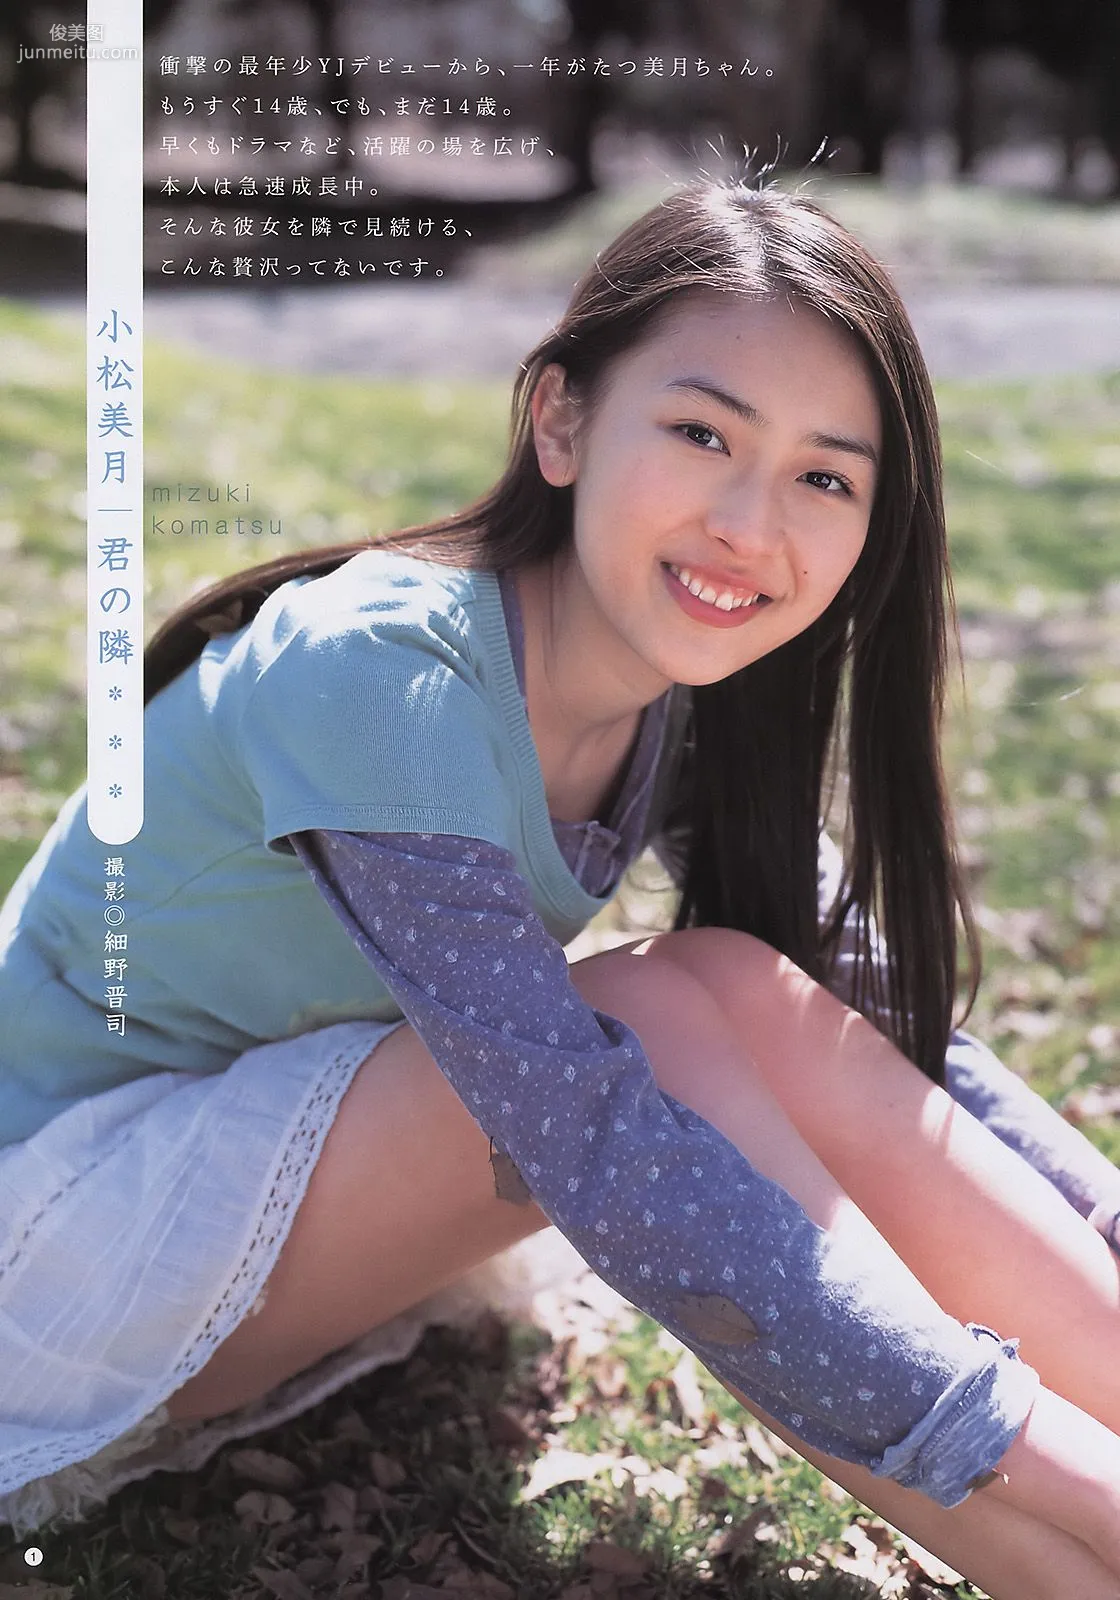 逢沢りな 夏菜 小松美月 山内鈴蘭 [Weekly Young Jump] 2011年No.21 写真杂志18